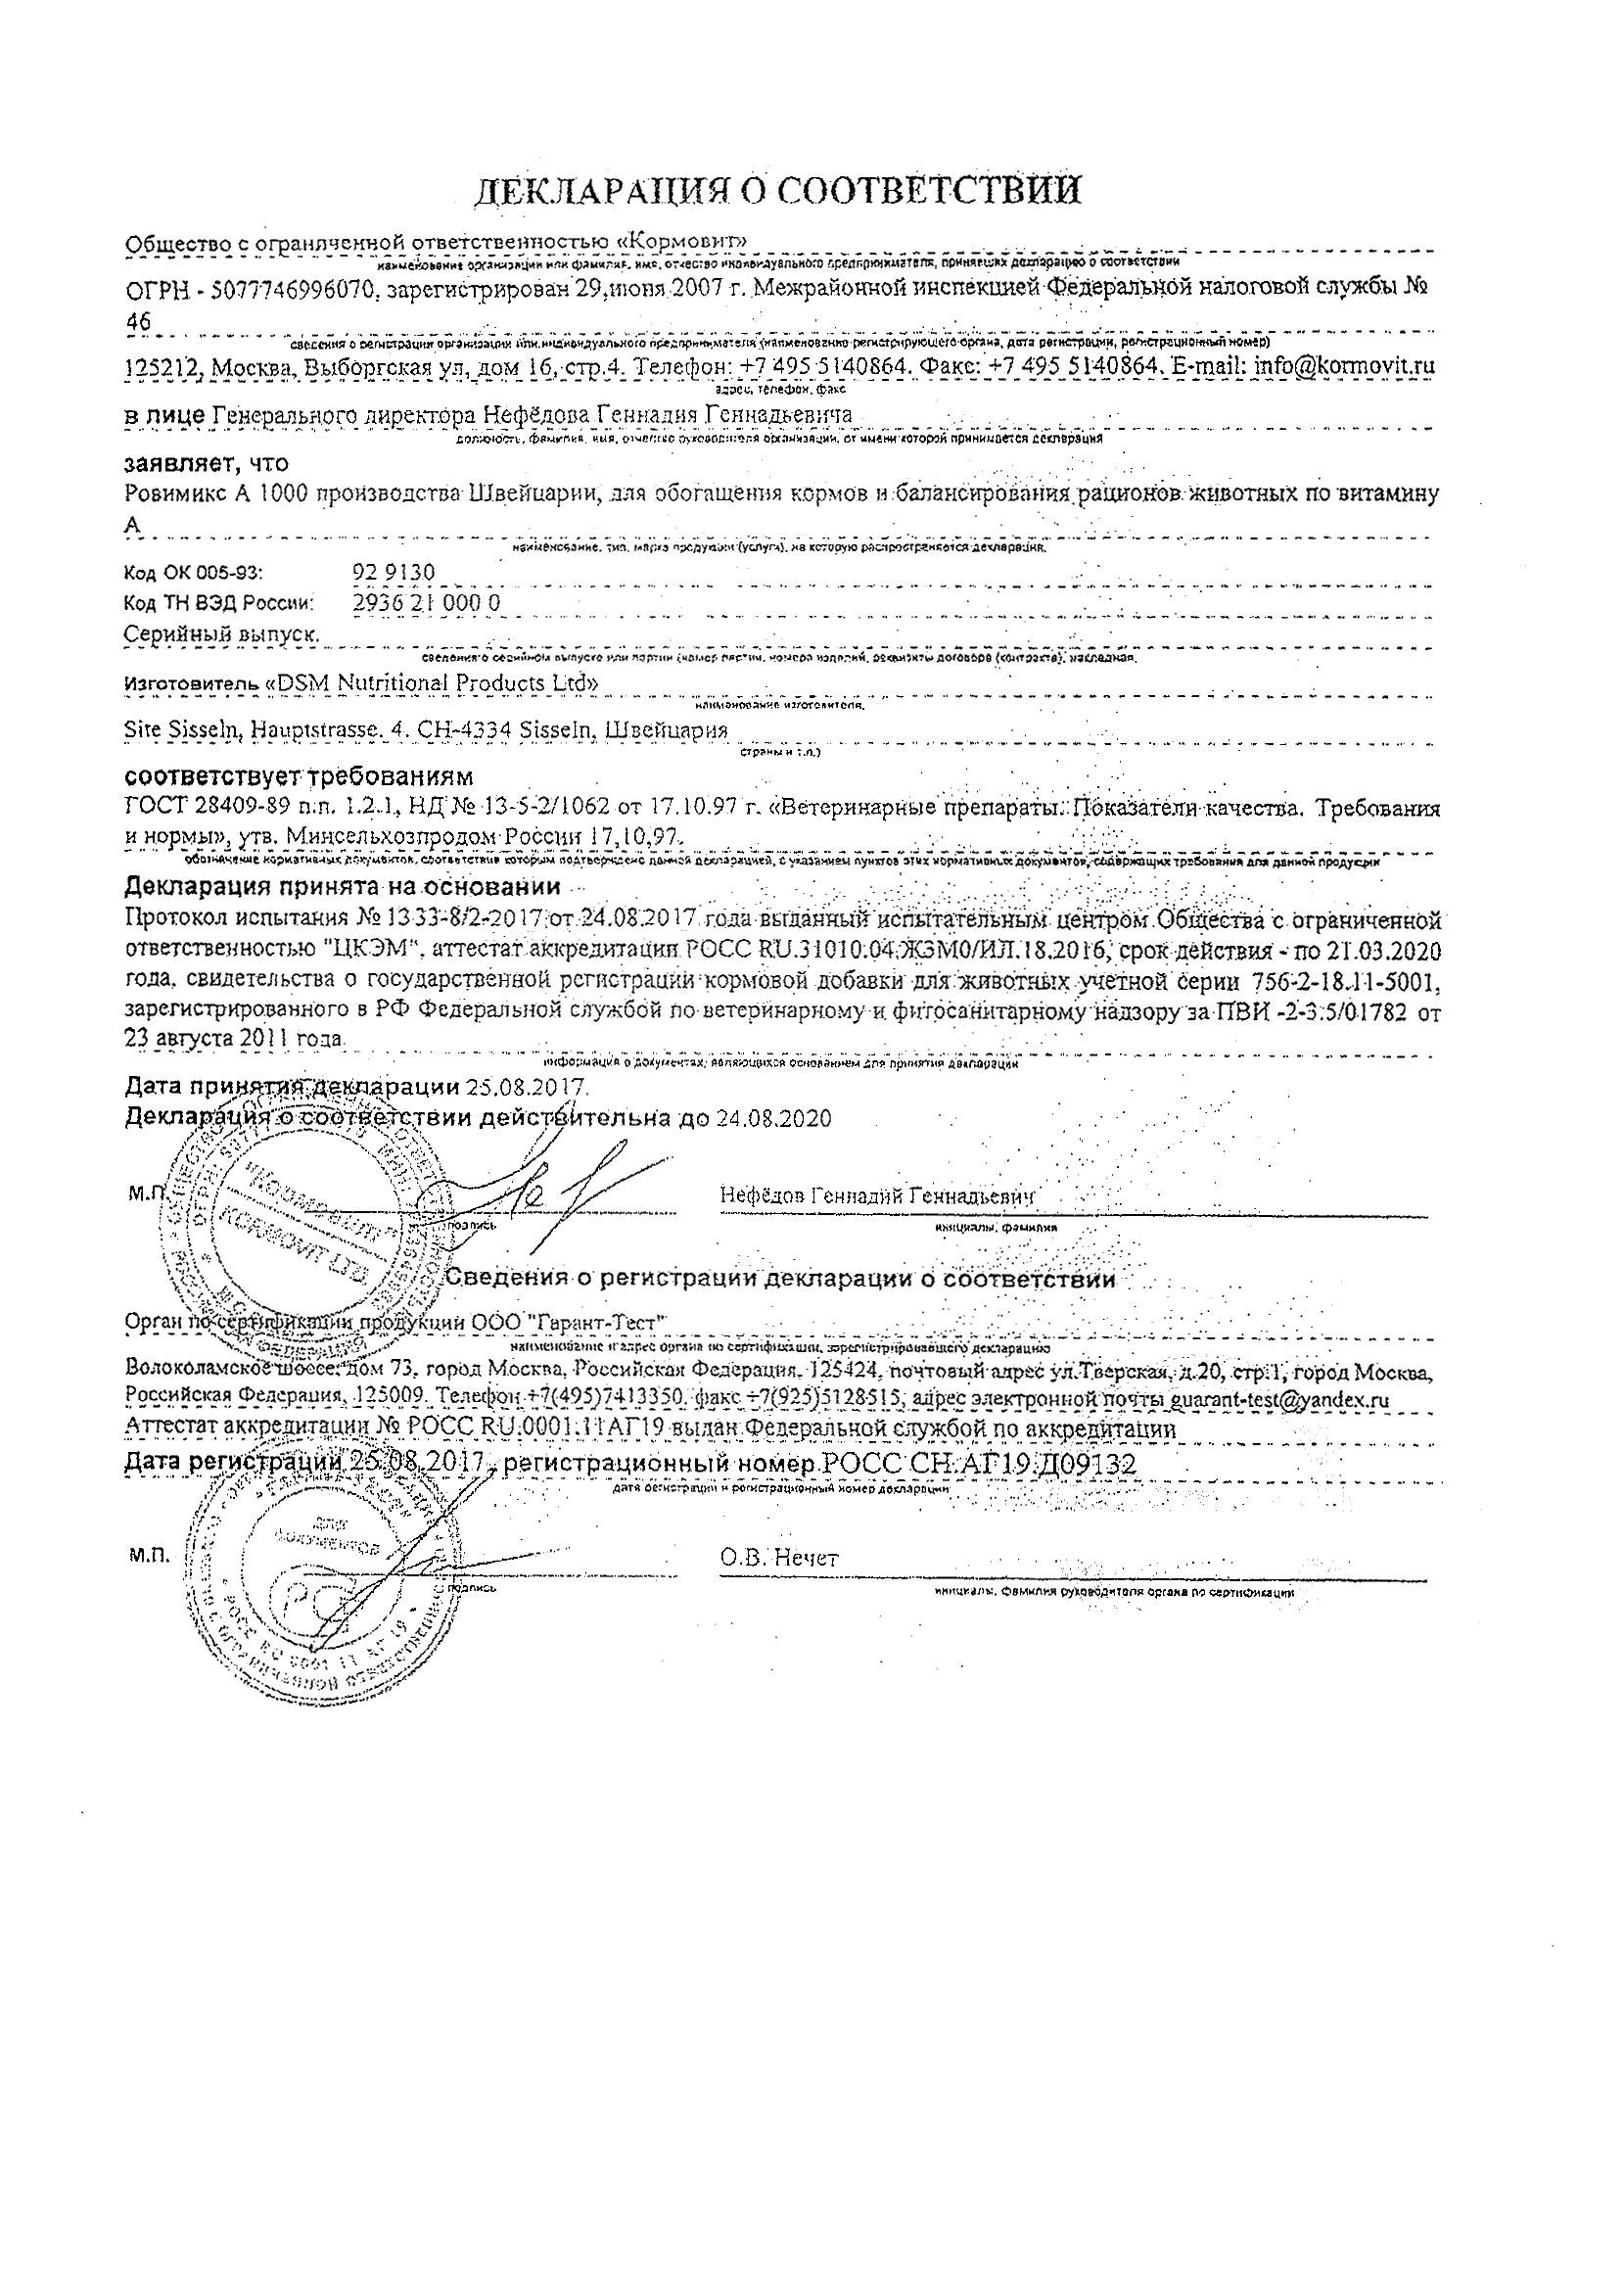 Поддельные документы на партию витаминов Ровимикс А 1000 лот № UT190042080